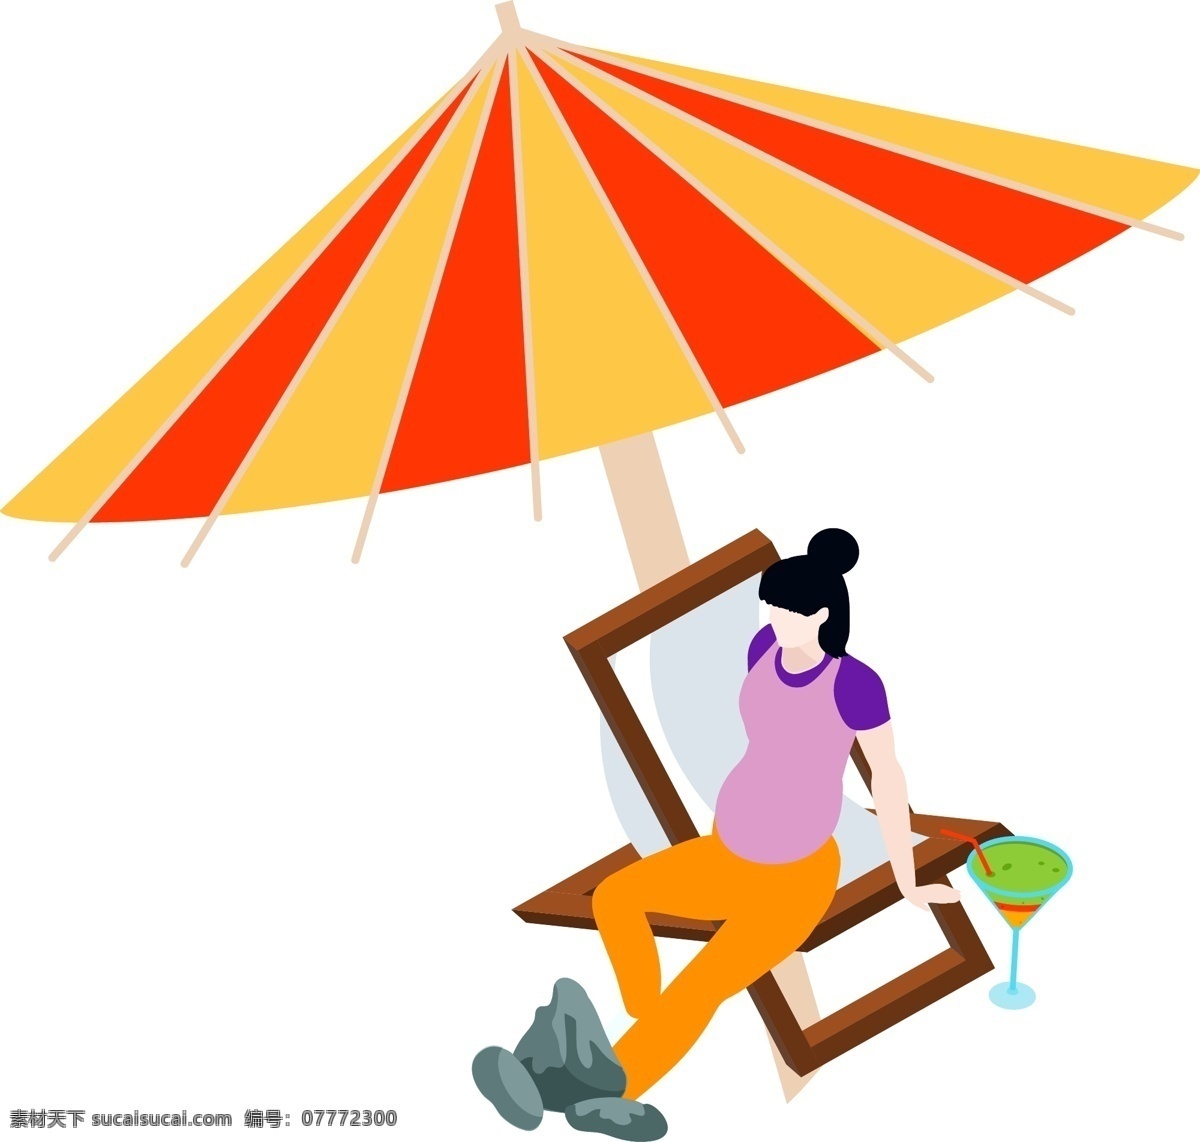 夏日 孕妇 装饰 元素 遮阳伞 椅子 简约 手绘 卡通可爱风格 简约风 矢量大方 清新 艺术